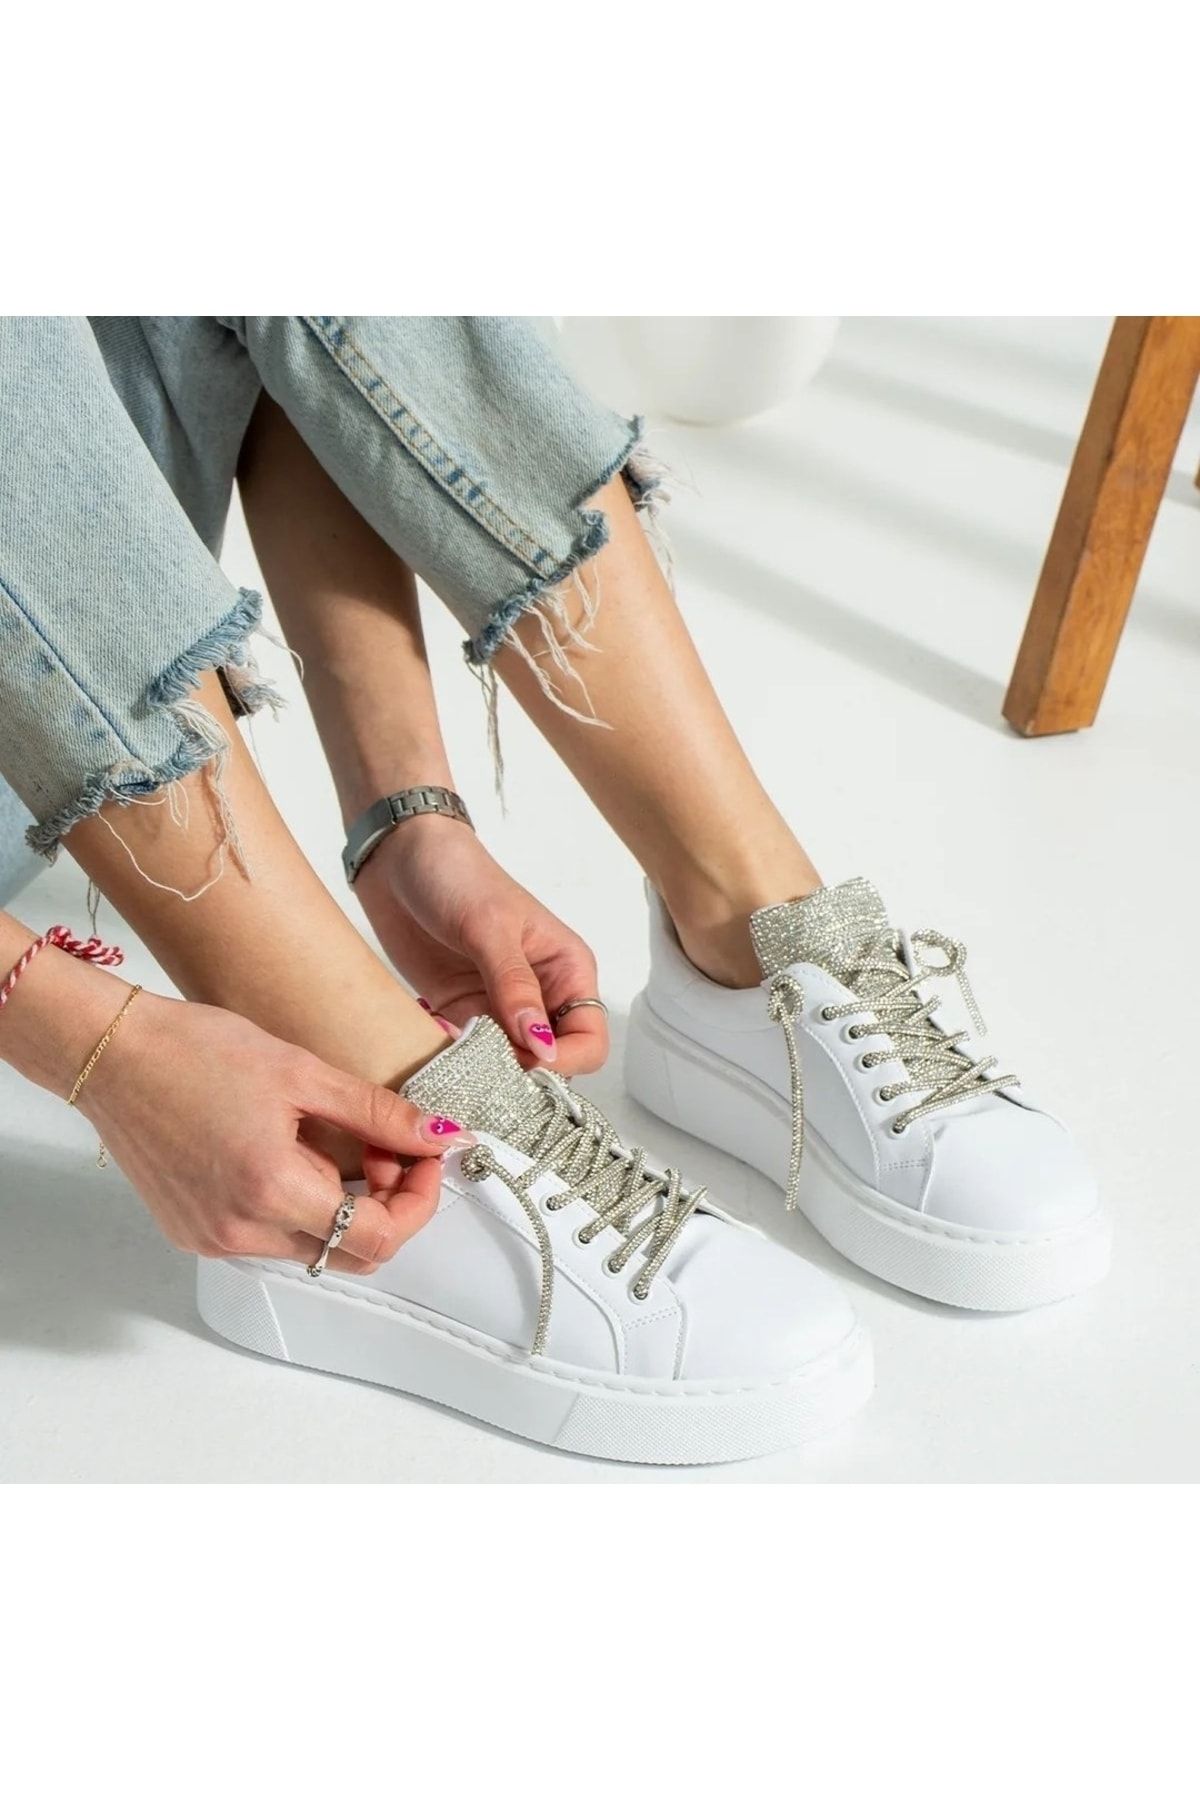 Afilli Kadın Beyaz Taşlı Parlak Sneaker Kalın Platform Taban Günlük Casual Rahat Spor Ayakkabı